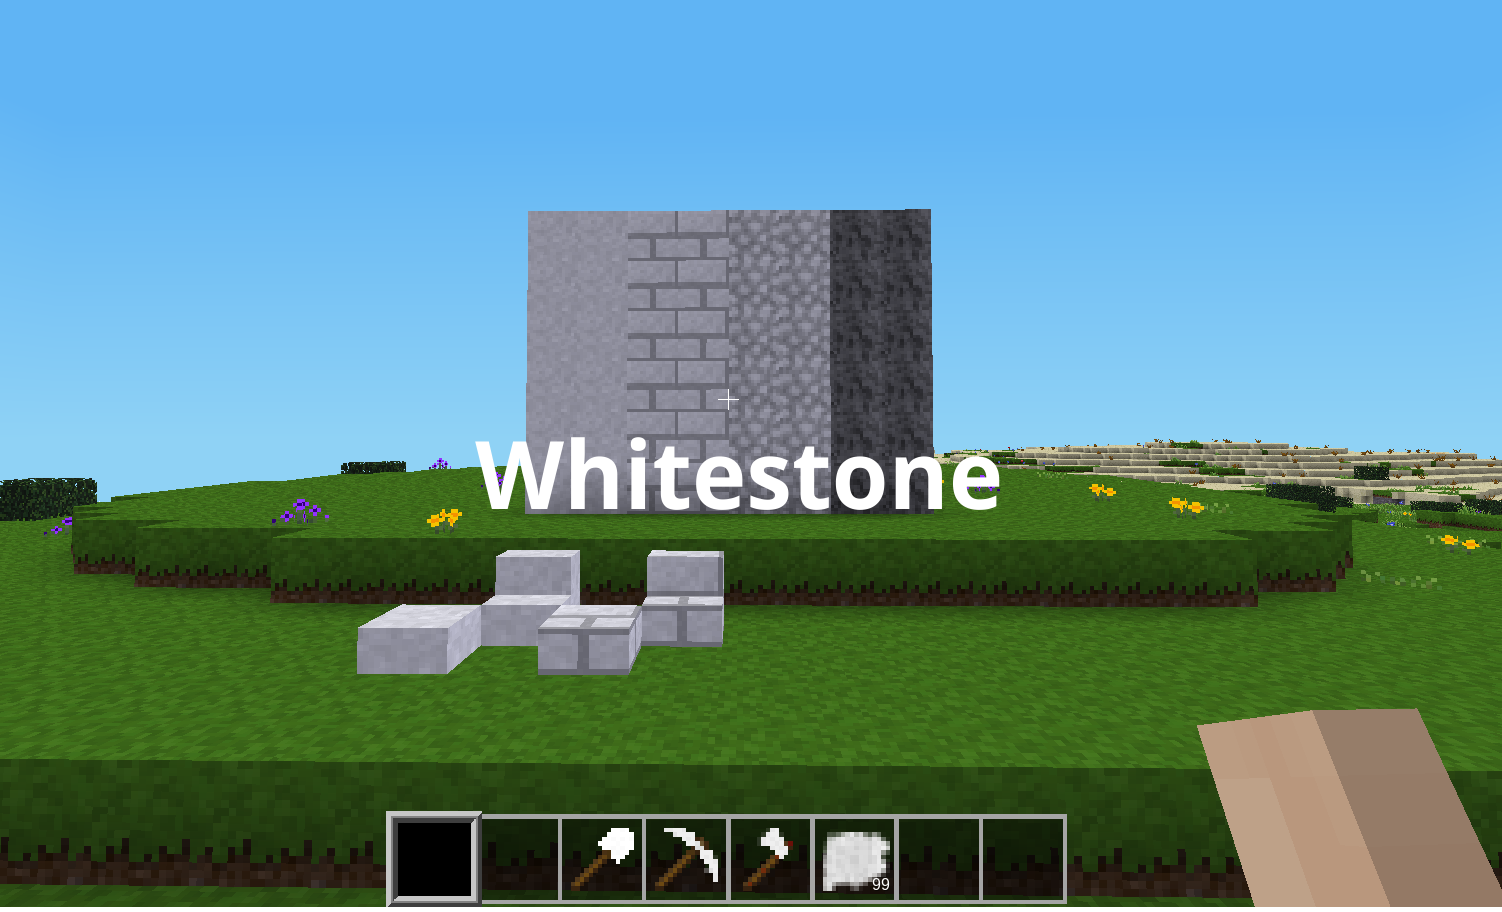 whitestone